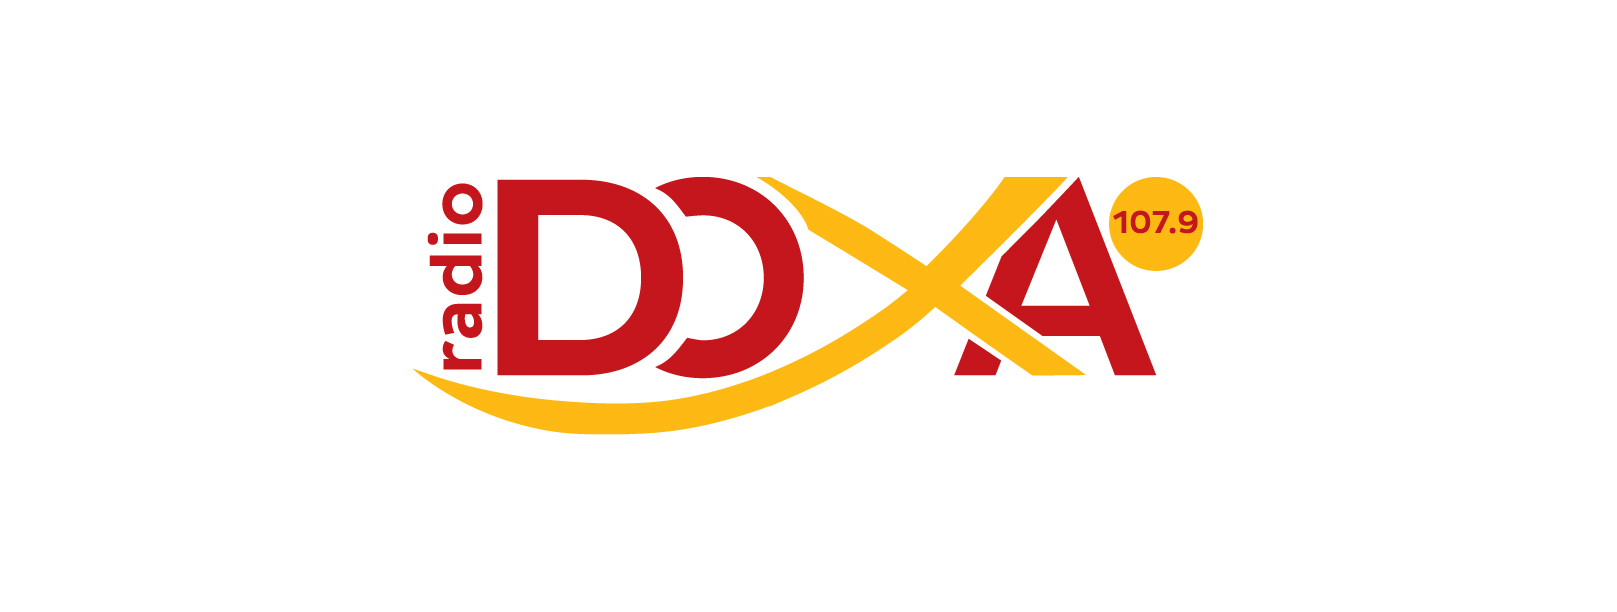 Doxa_logo (1)